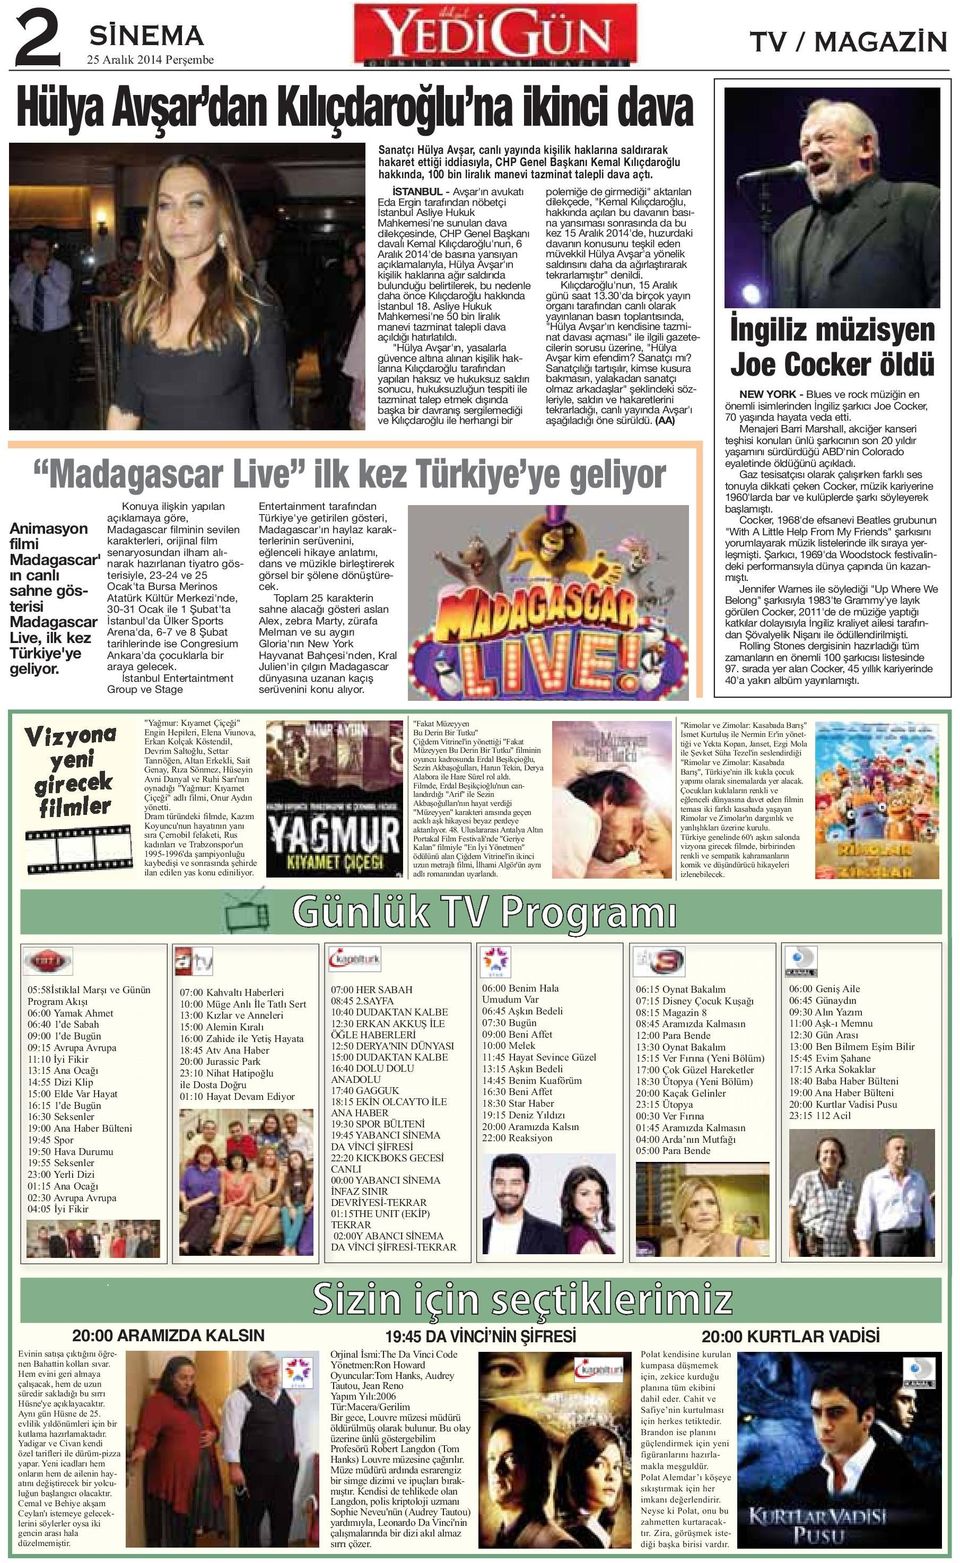 İSTANBUL - Avşar'ın avukatı Eda Ergin tarafından nöbetçi İstanbul Asliye Hukuk Mahkemesi'ne sunulan dava dilekçesinde, CHP Genel Başkanı davalı Kemal Kılıçdaroğlu'nun, 6 Aralık 2014'de basına